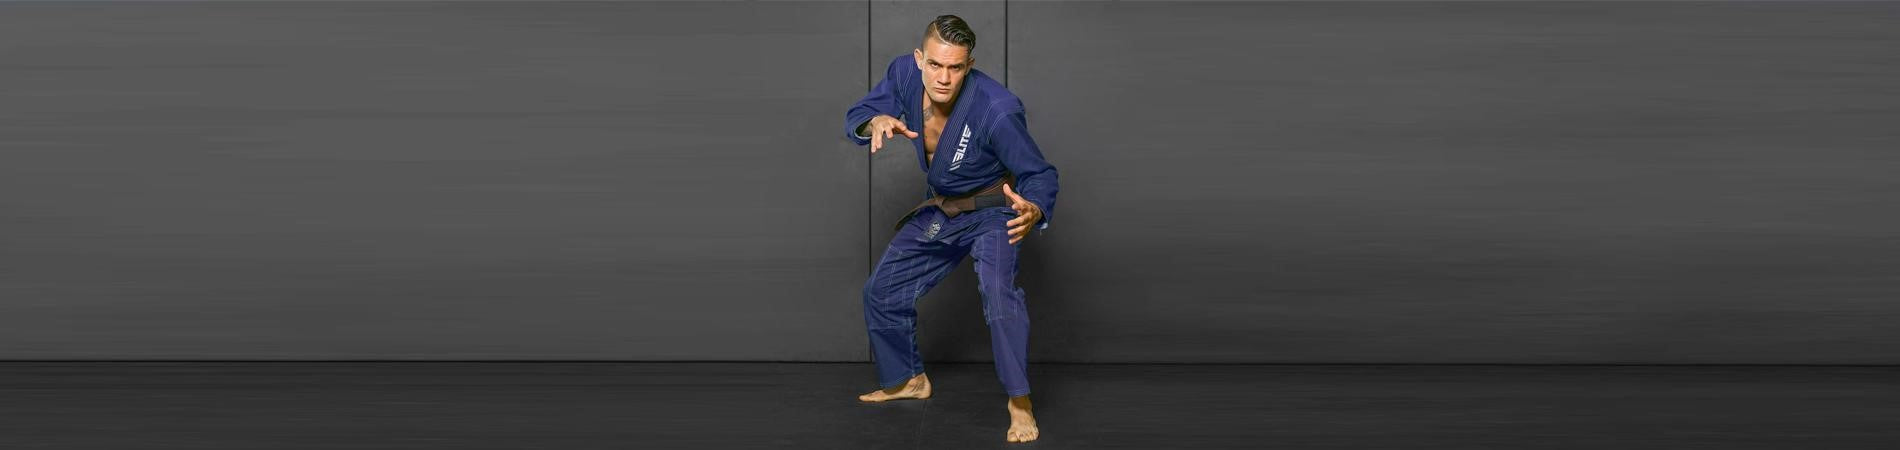 Jiu Jitsu Gi Buyer’s Guide For Beginner BJJ Trainees